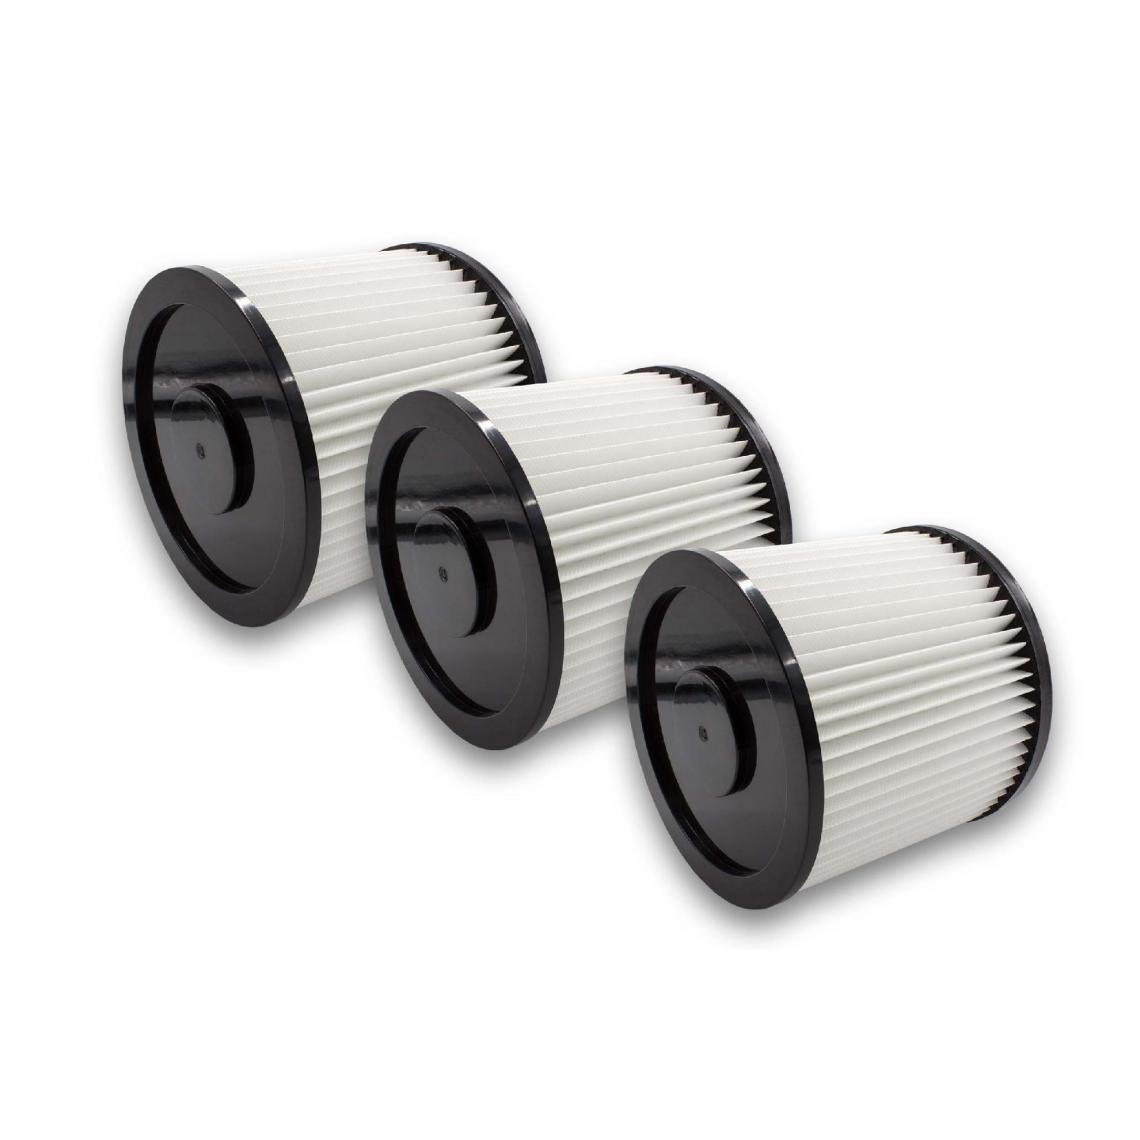 Vhbw - vhbw Set de filtres 3x Filtre plissé compatible avec Rowenta ZR-70, ZR-70/1, ZR-701, ZR-80, ZR-81 aspirateur à sec ou humide - Filtre à cartouche - Accessoire entretien des sols